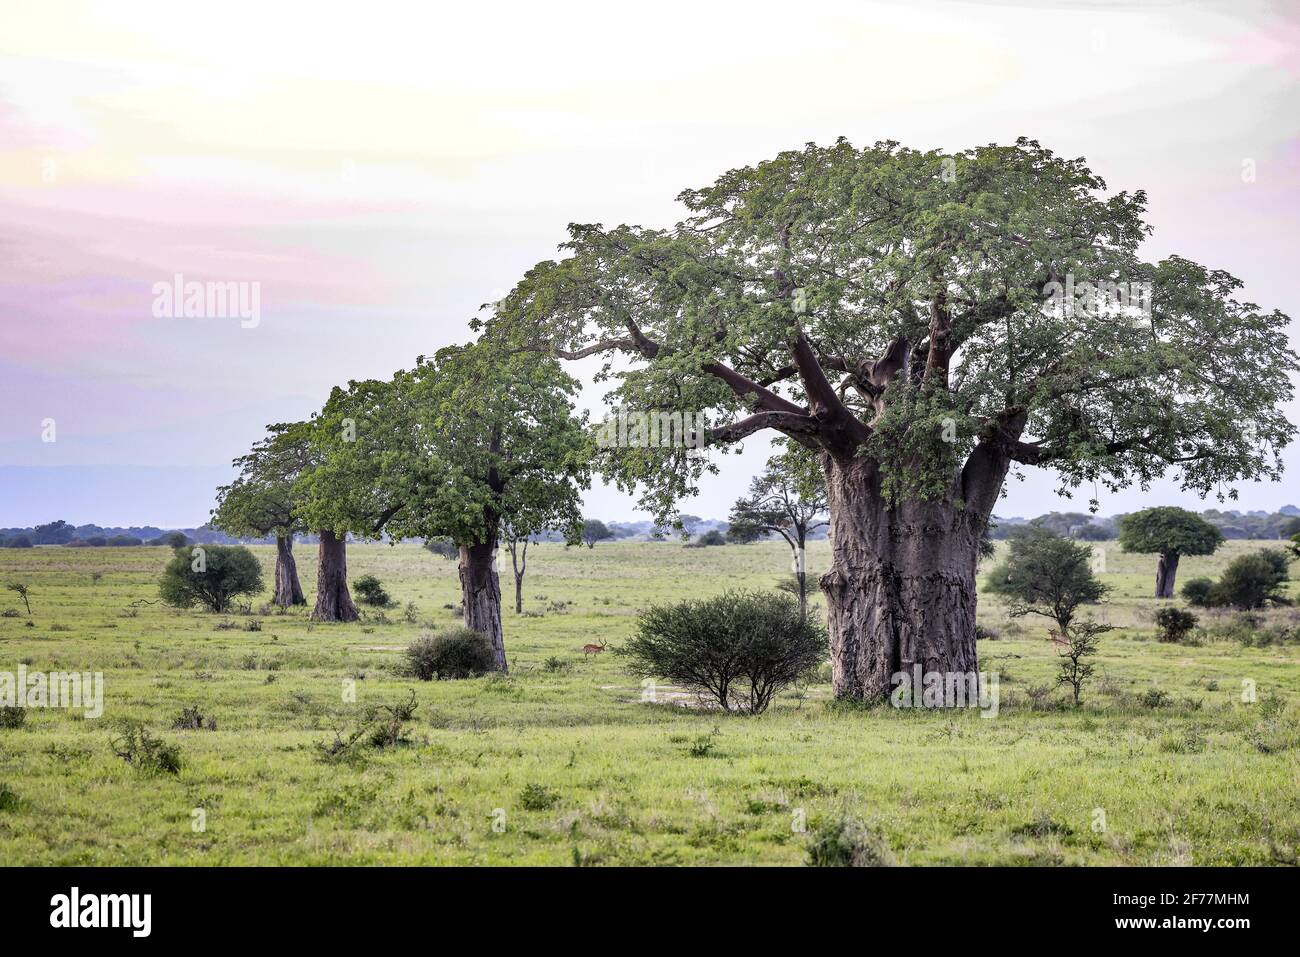 Tanzanie, AMM (zone de gestion de la faune) de Randilen, district de Monduli, région d'Arusha, alignement des baobabs (Adansonia digitata), dans la savane Banque D'Images